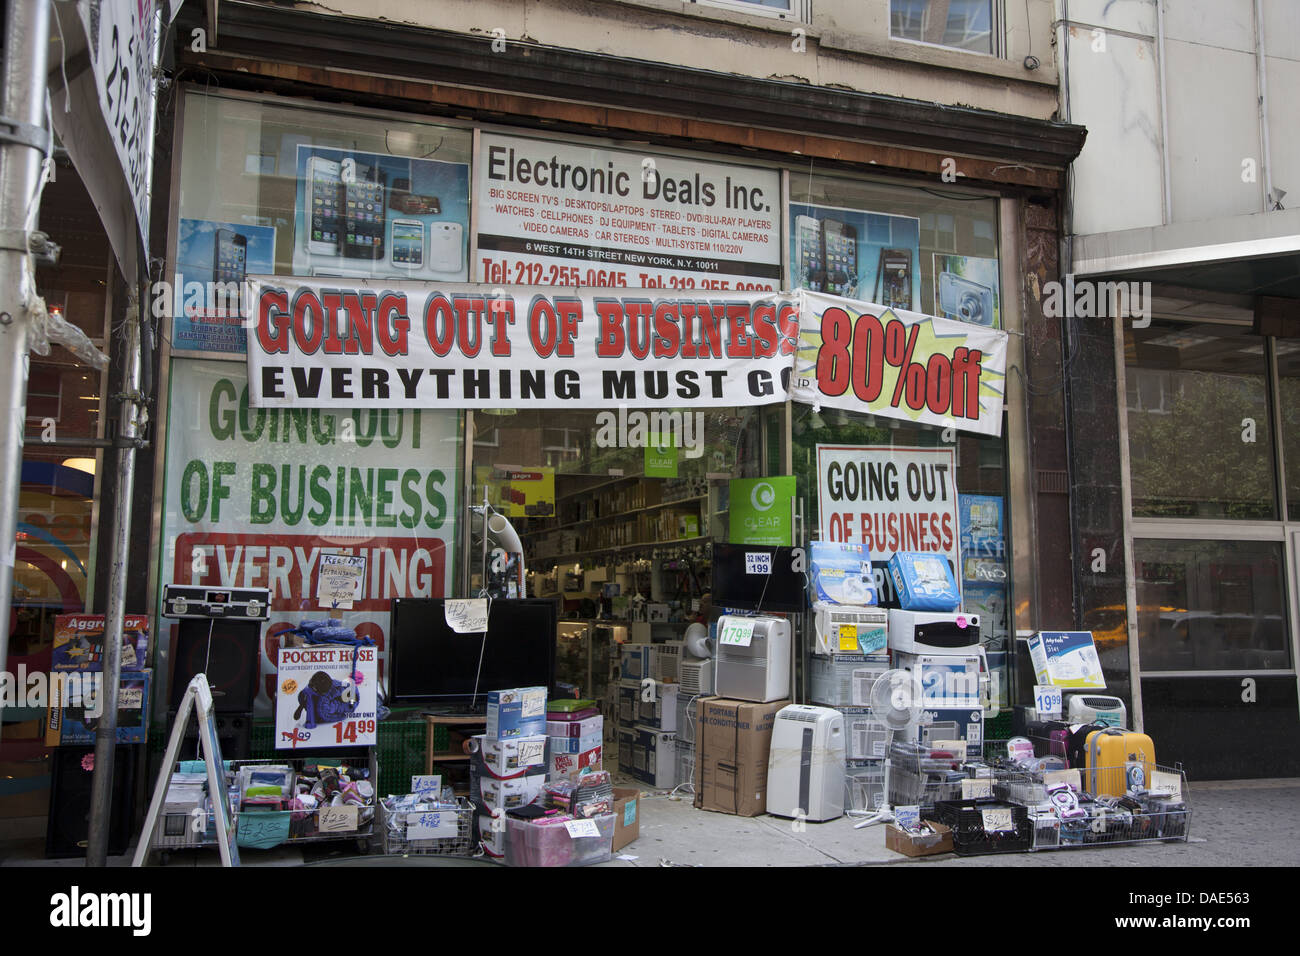 Tienda de electrónica, 14th St., Manhattan, Ciudad de Nueva York. A menudo, las pequeñas empresas luchan por mantenerse a flote en la frágil economía de Estados Unidos. Foto de stock